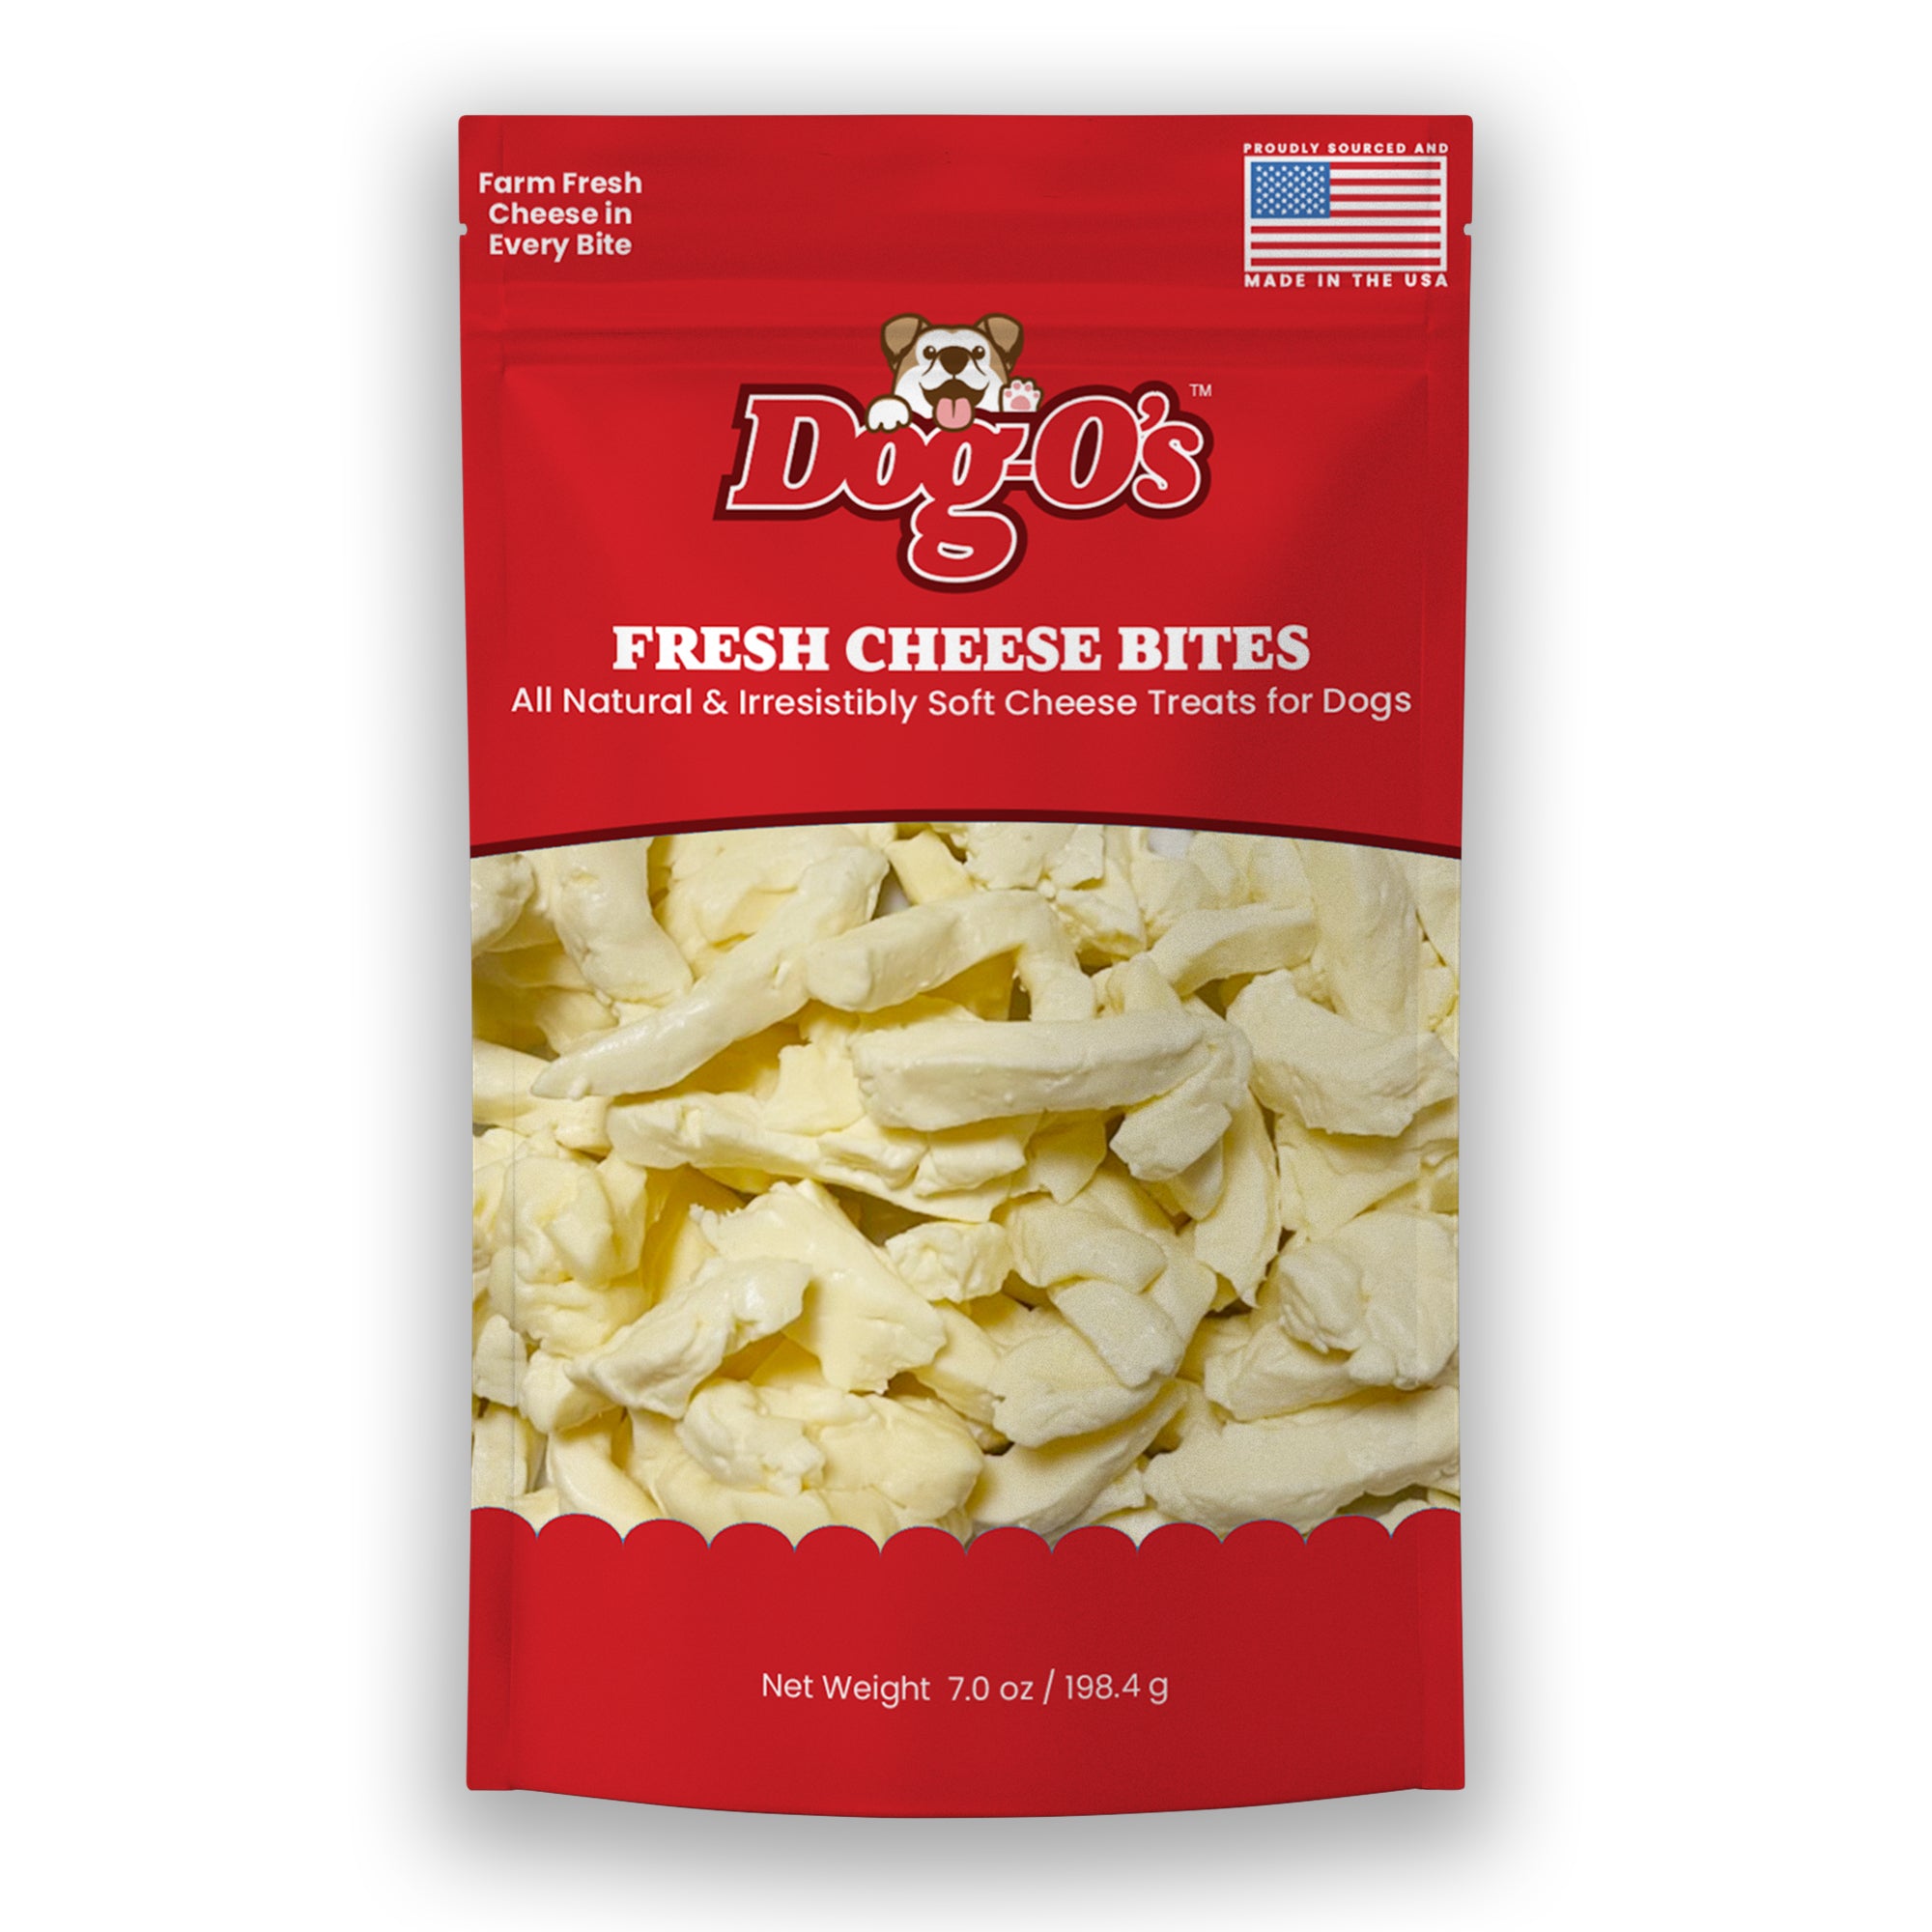 Fresh Cheese Bites